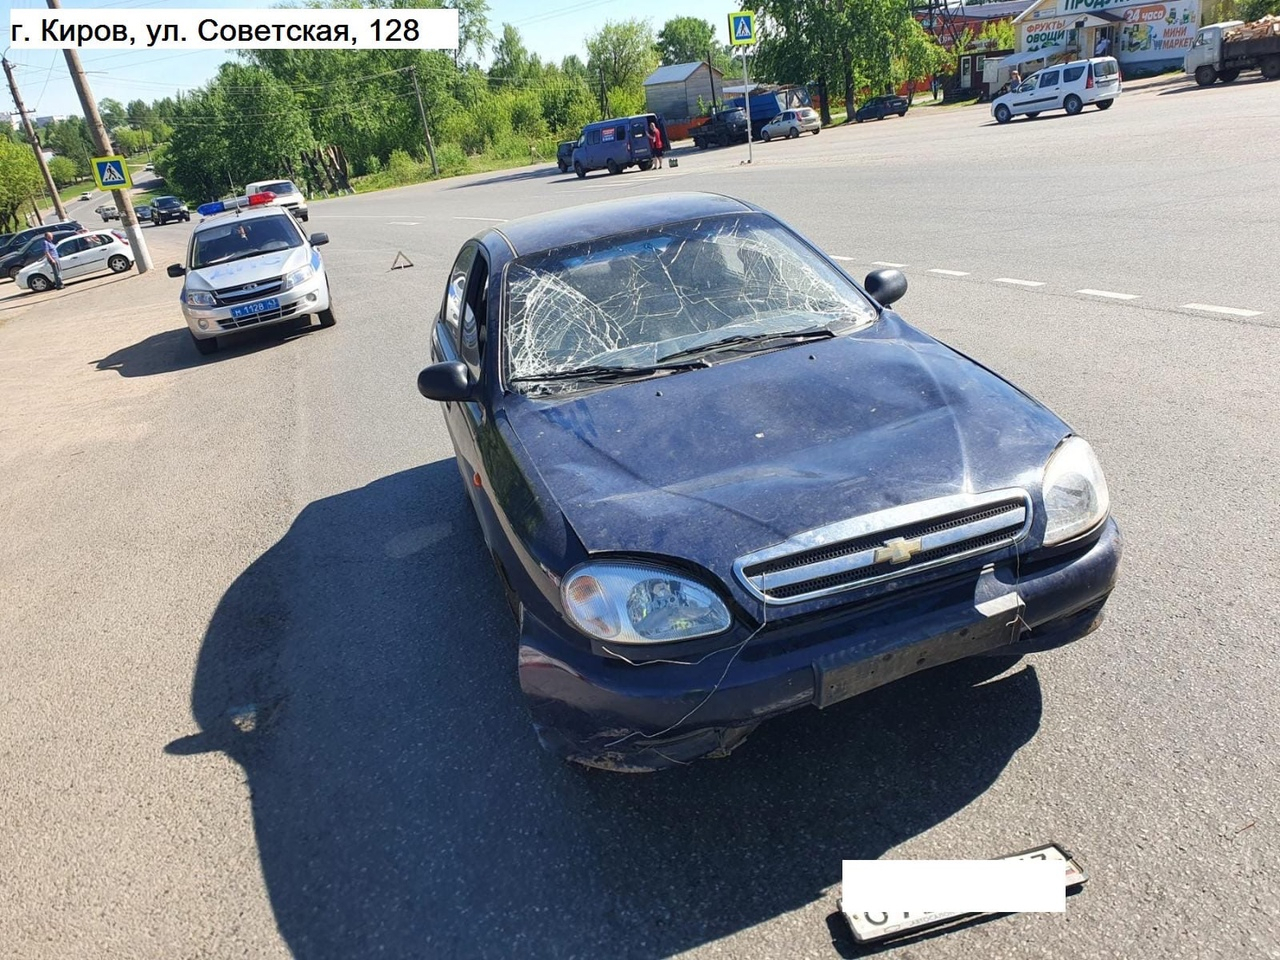 В Кирове водитель иномарки сбил 19-летнего на пешеходном переходе